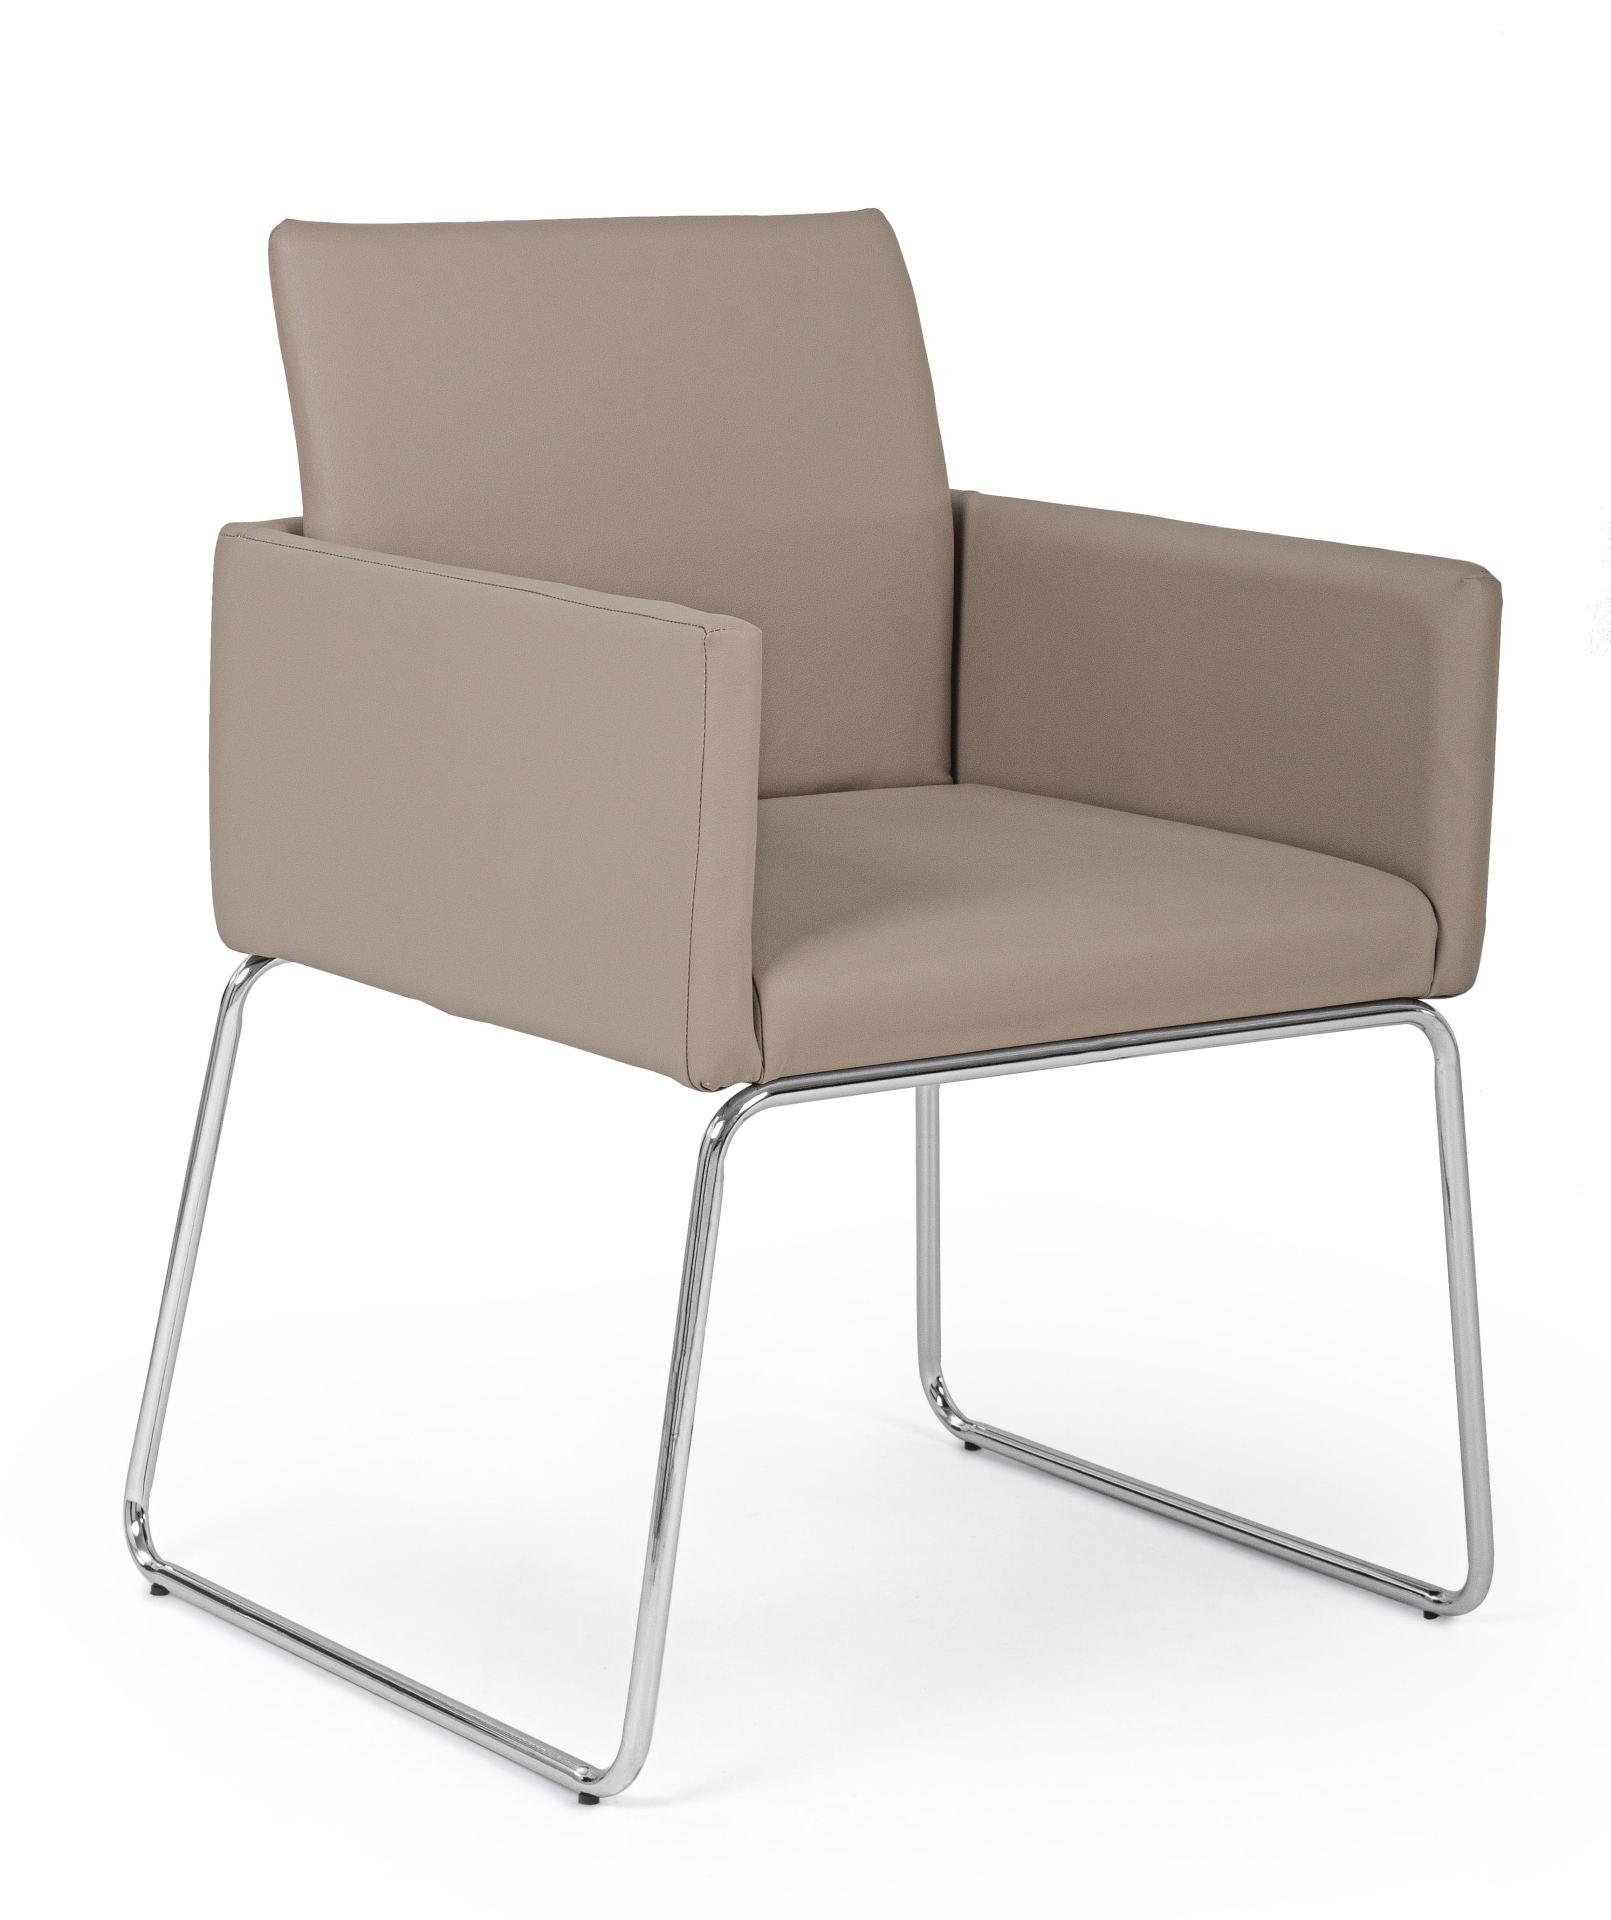 Der Esszimmerstuhl Sixty überzeugt mit seinem modernem Design. Gefertigt wurde der Stuhl aus Kunststoff-Bezug welcher einen Taupe Farbton besitzt. Das Gestell ist aus Metall und ist Silber. Die Sitzhöhe beträgt 48 cm.